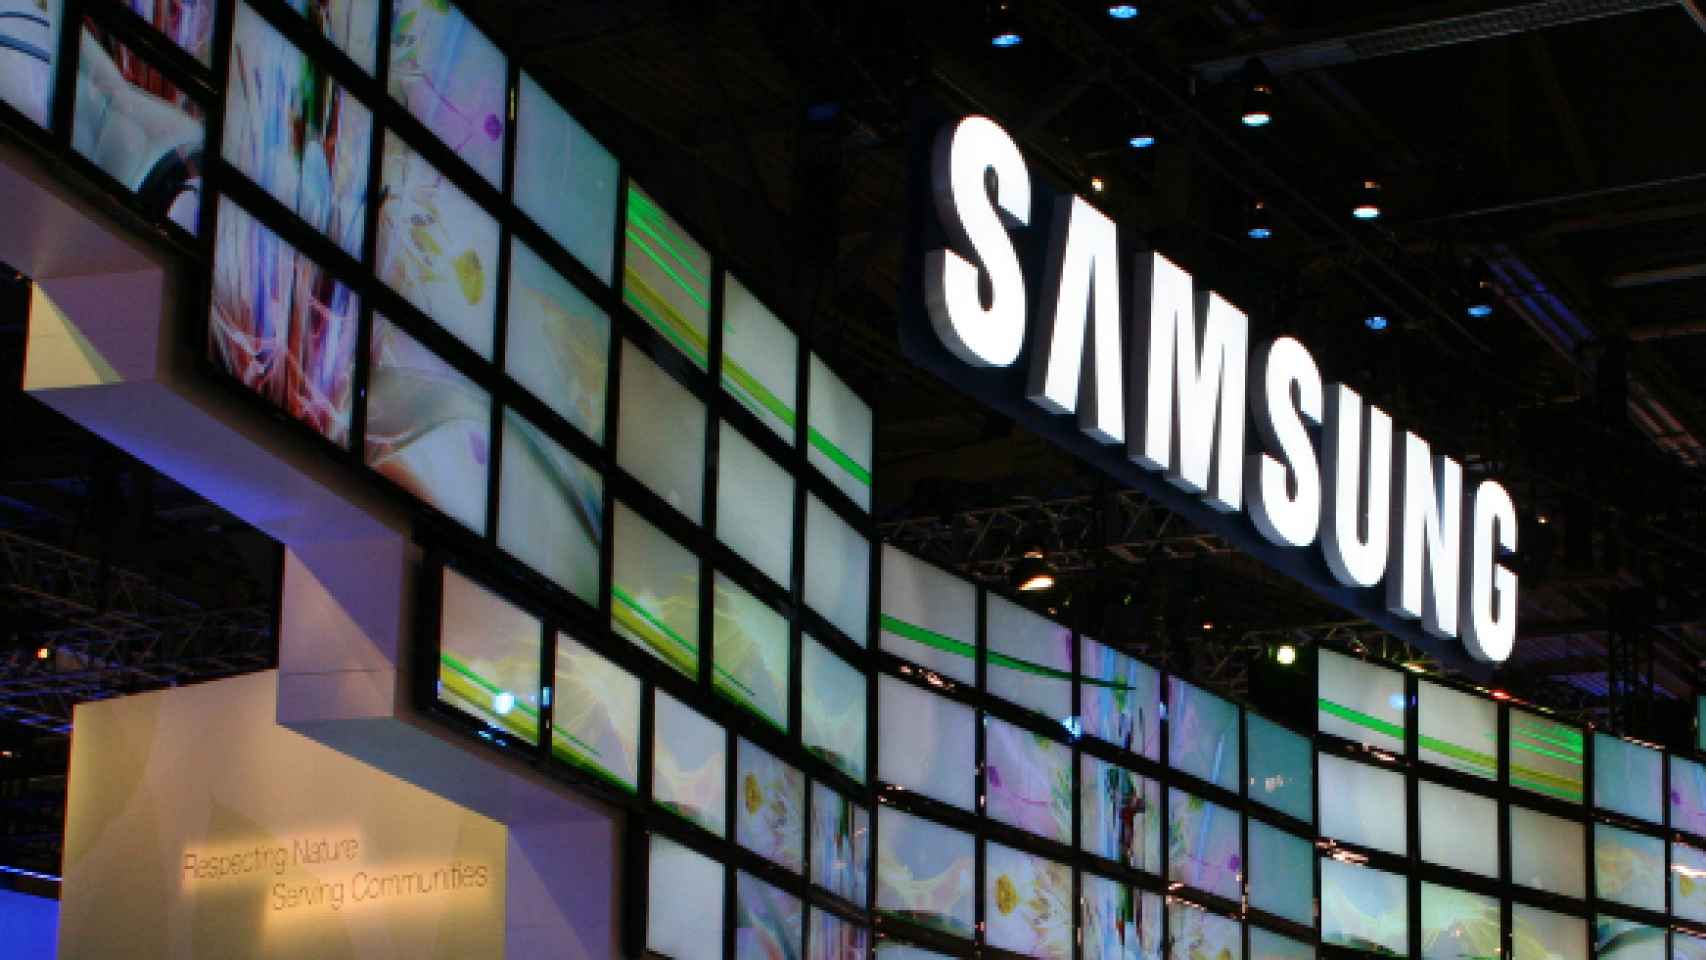 La nueva estrategia de Samsung: La innovación, y no el hardware, según su presidente